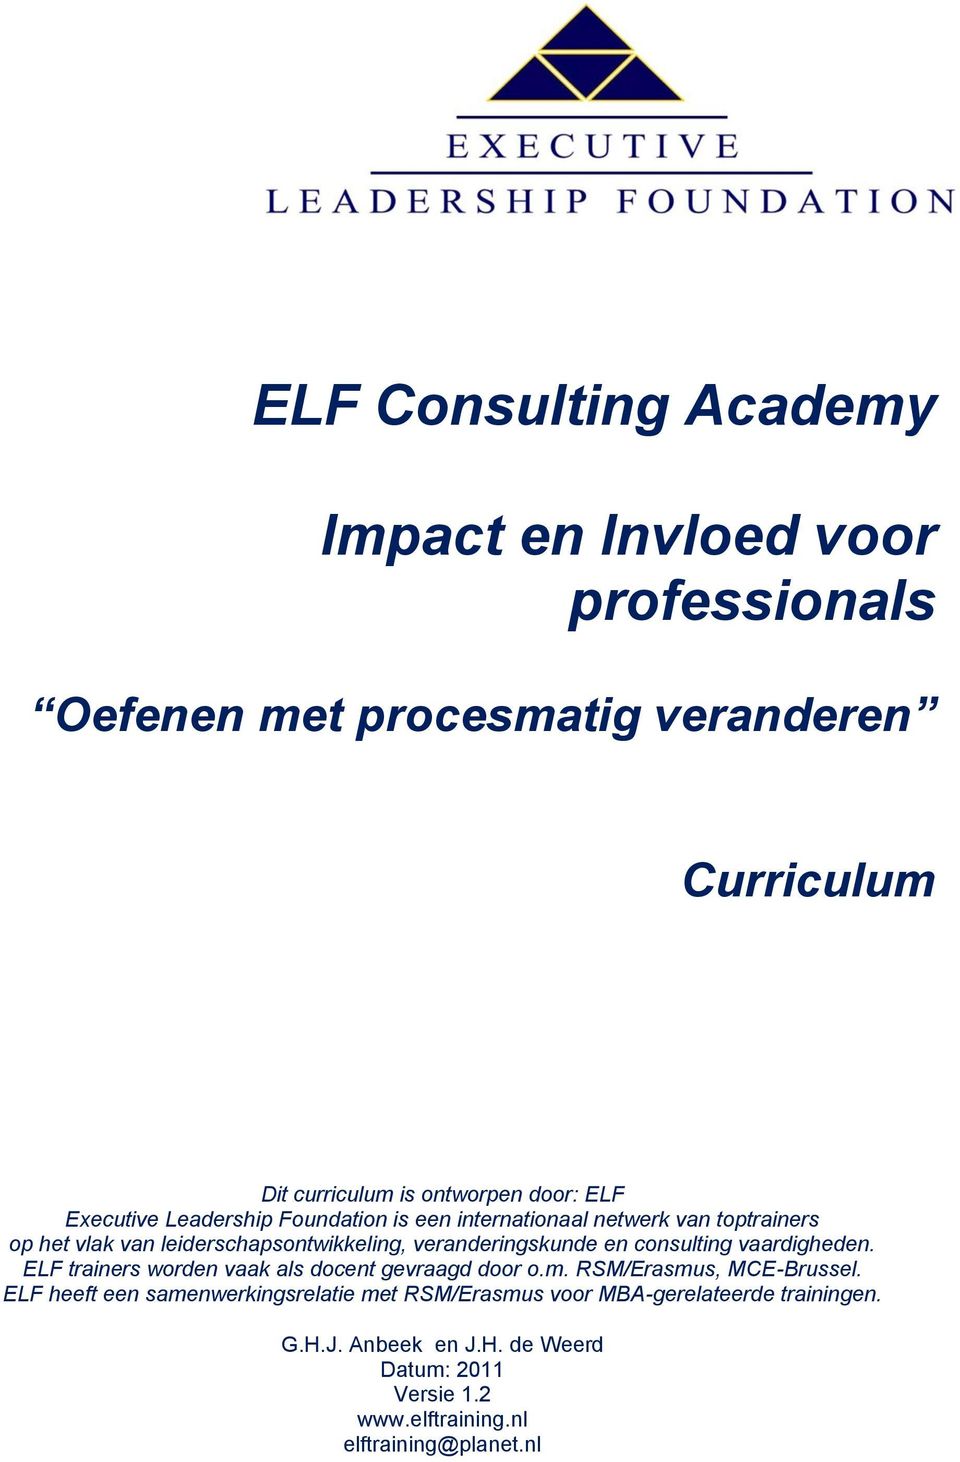 en consulting vaardigheden. ELF trainers worden vaak als docent gevraagd door o.m. RSM/Erasmus, MCE-Brussel.